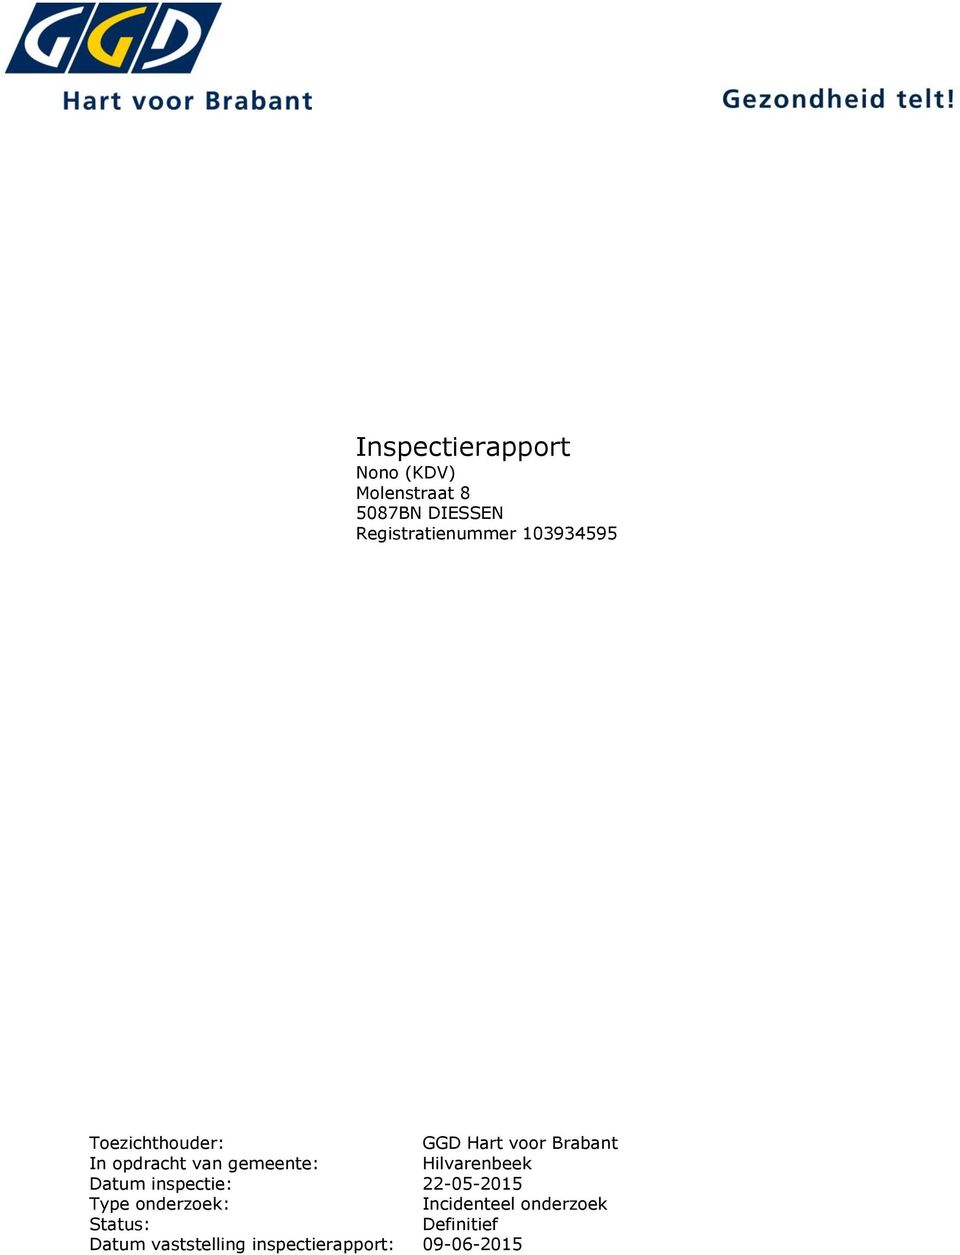 opdracht van gemeente: Hilvarenbeek Datum inspectie: 22-05-2015 Type